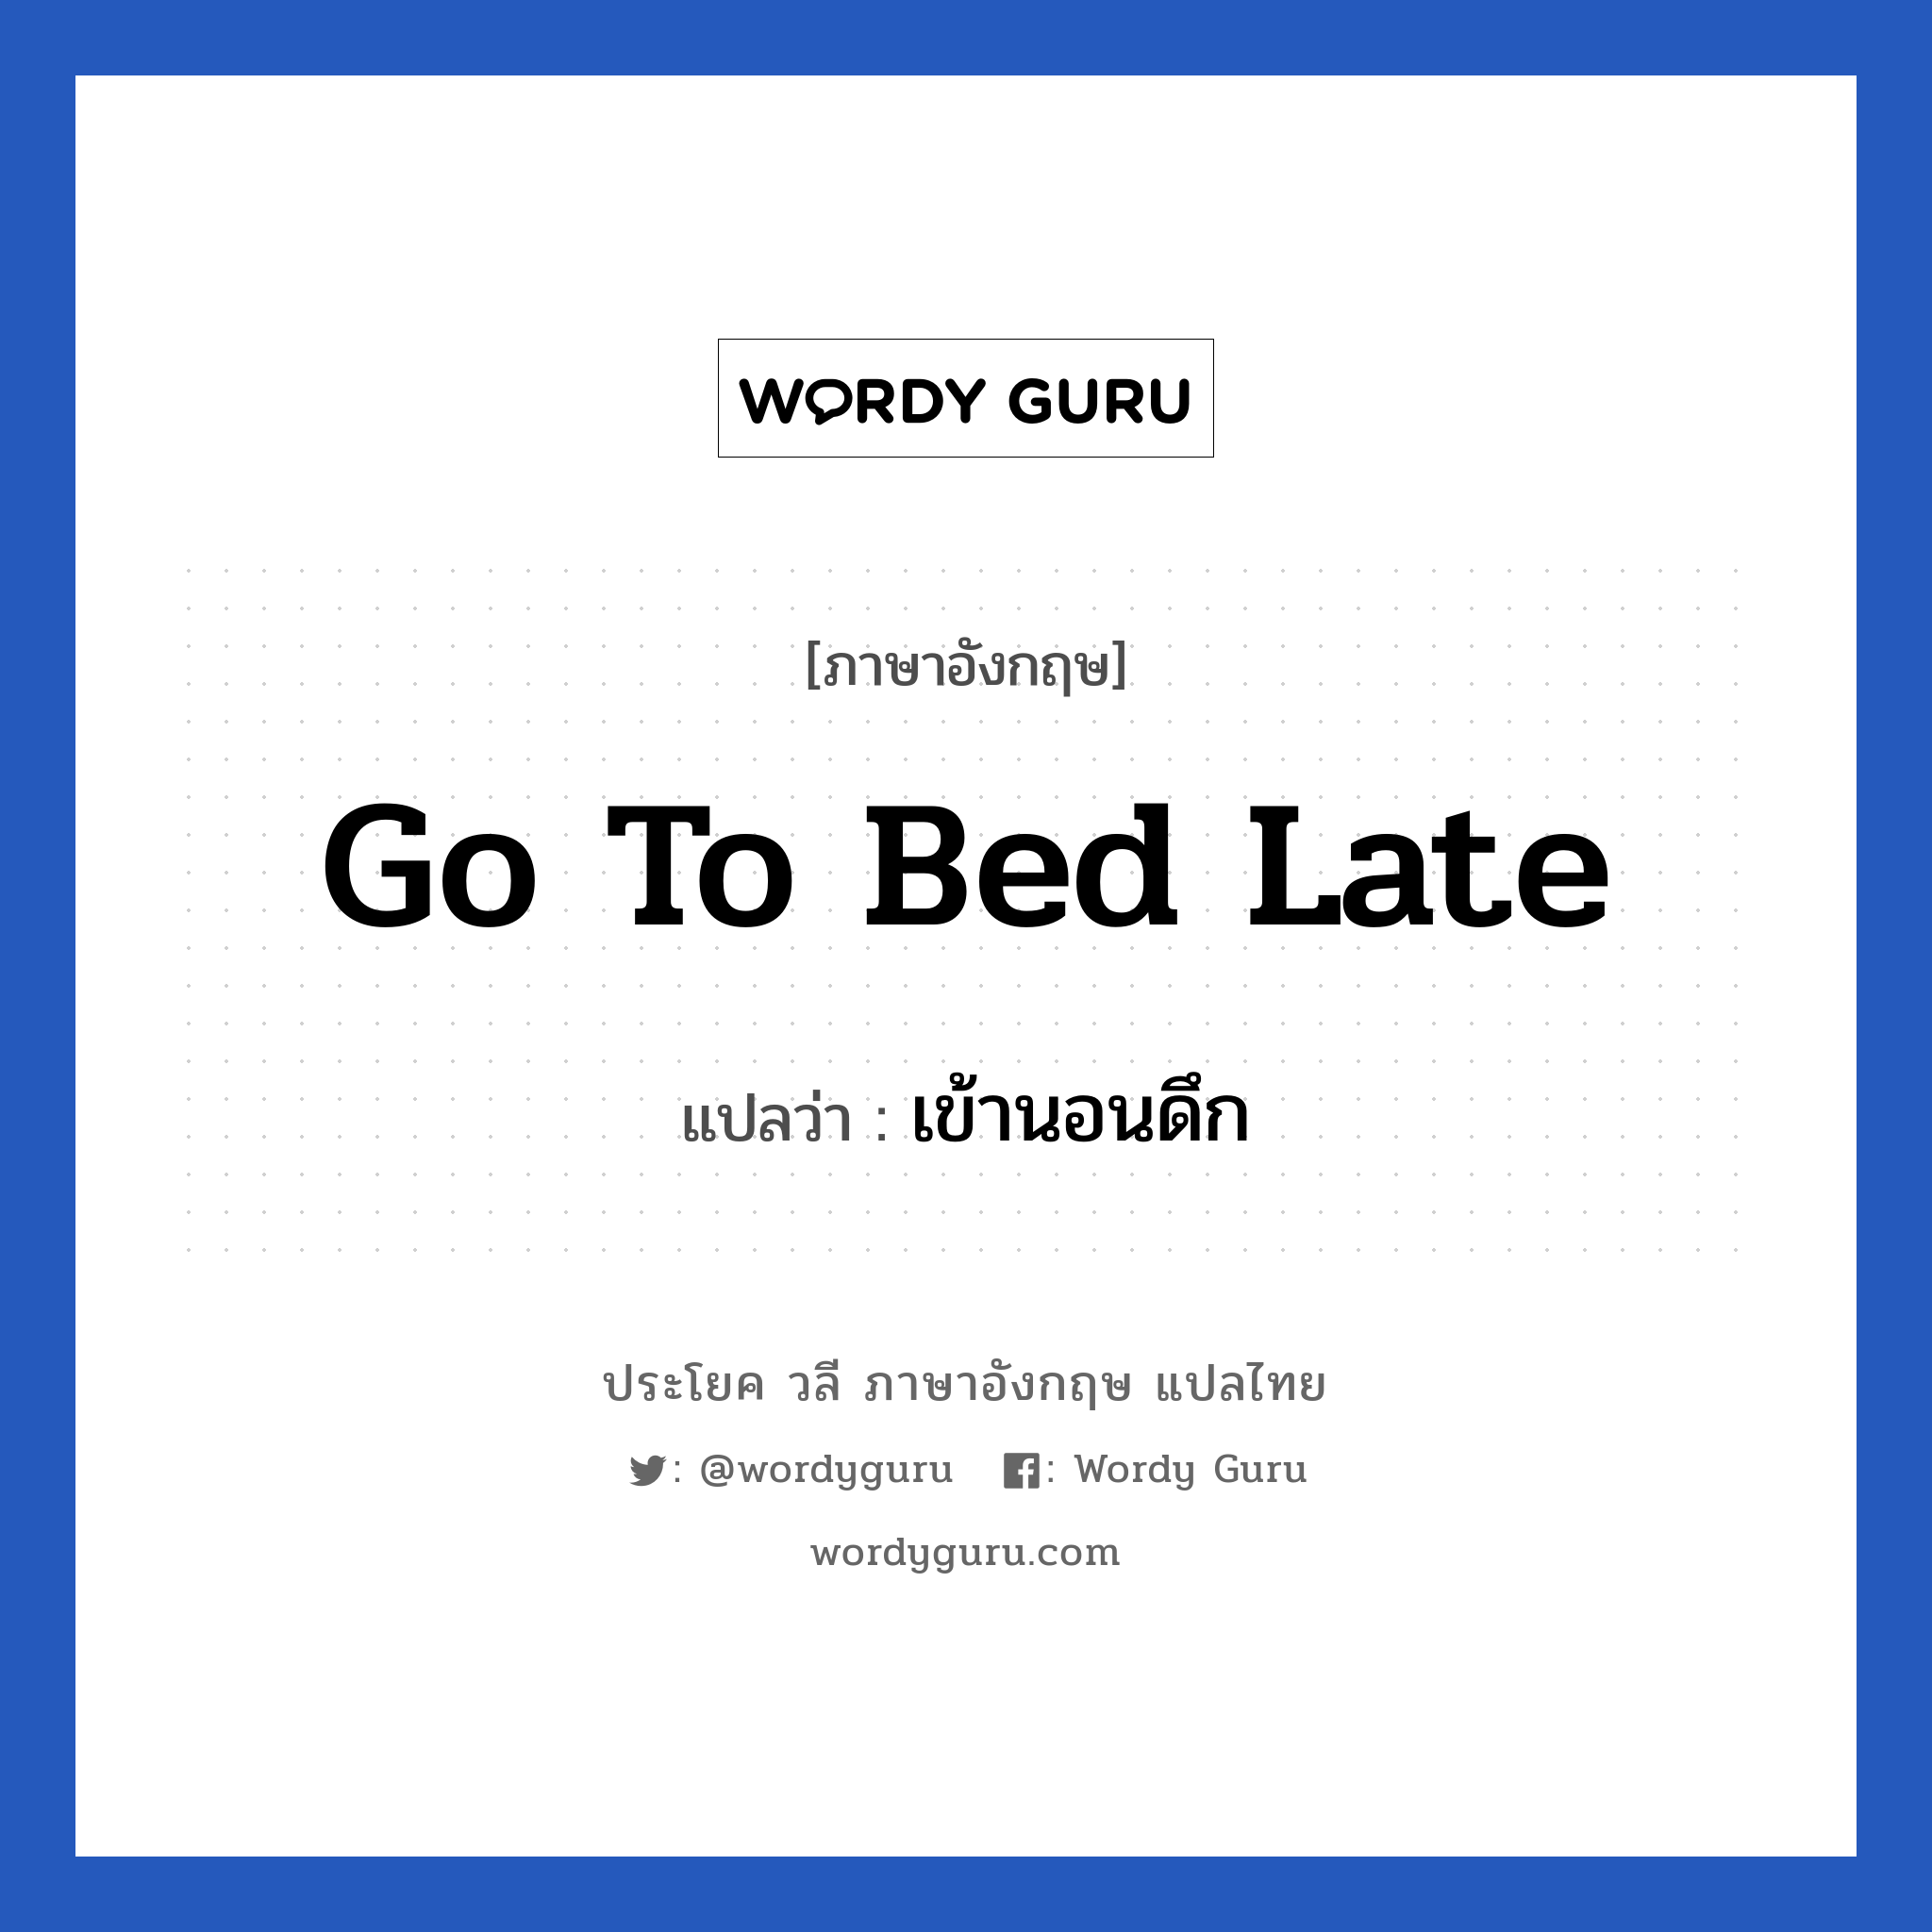 Go to bed late แปลว่า?, วลีภาษาอังกฤษ Go to bed late แปลว่า เข้านอนดึก